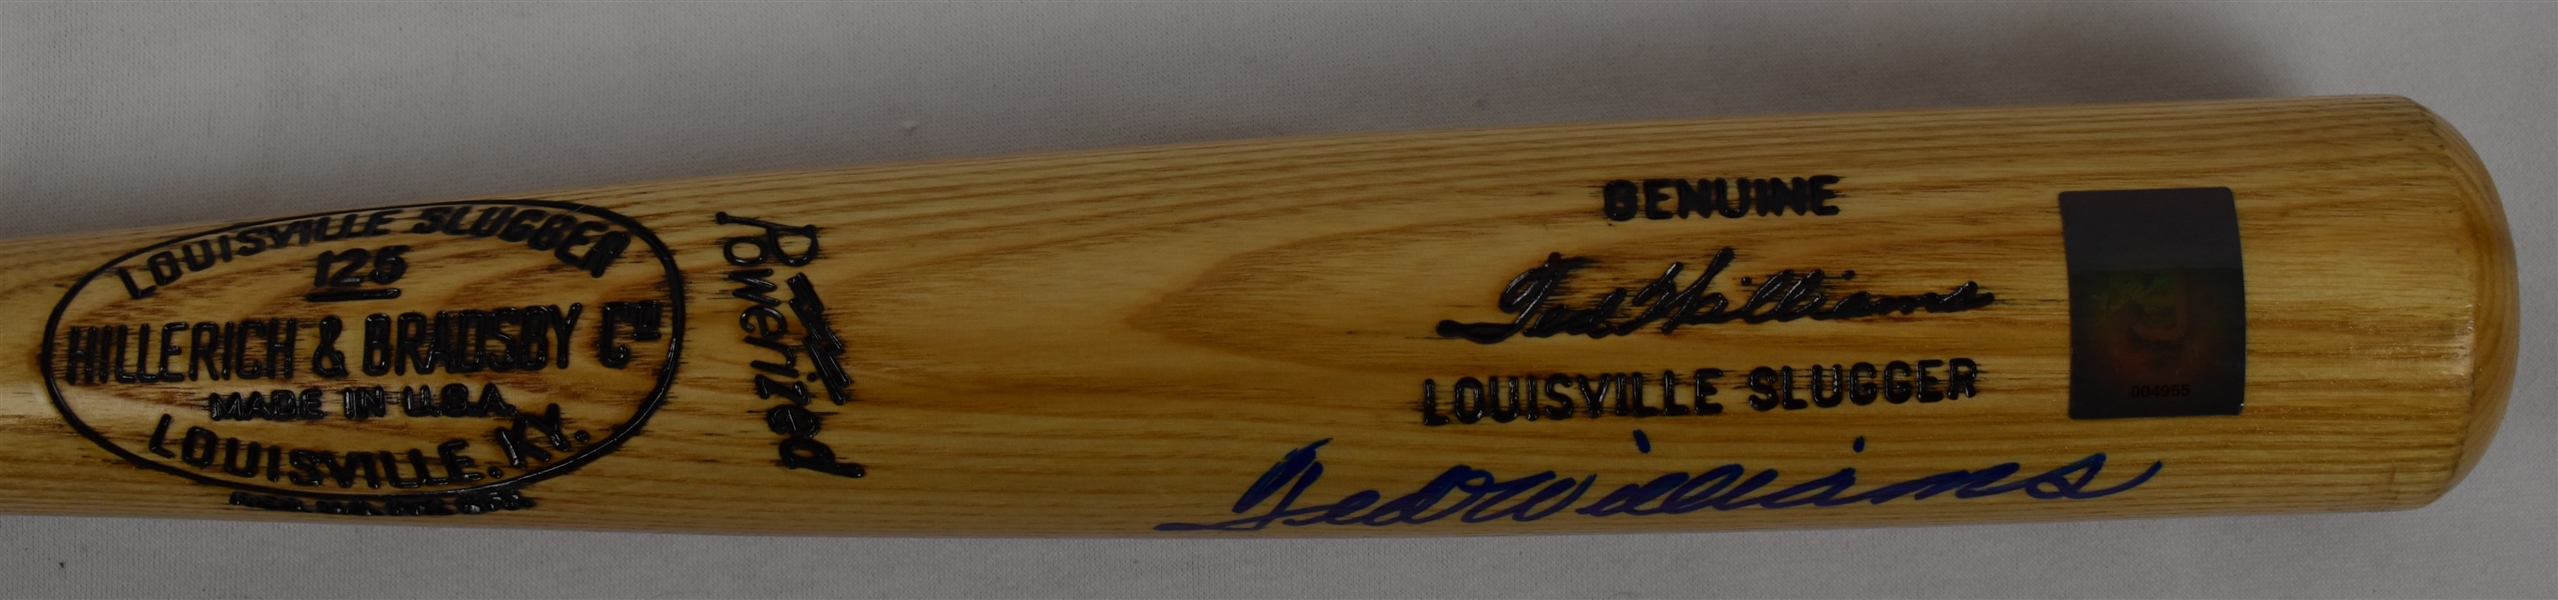 Ted Williams Autographed Signature Model Baseball Bat w/Green Diamond COA